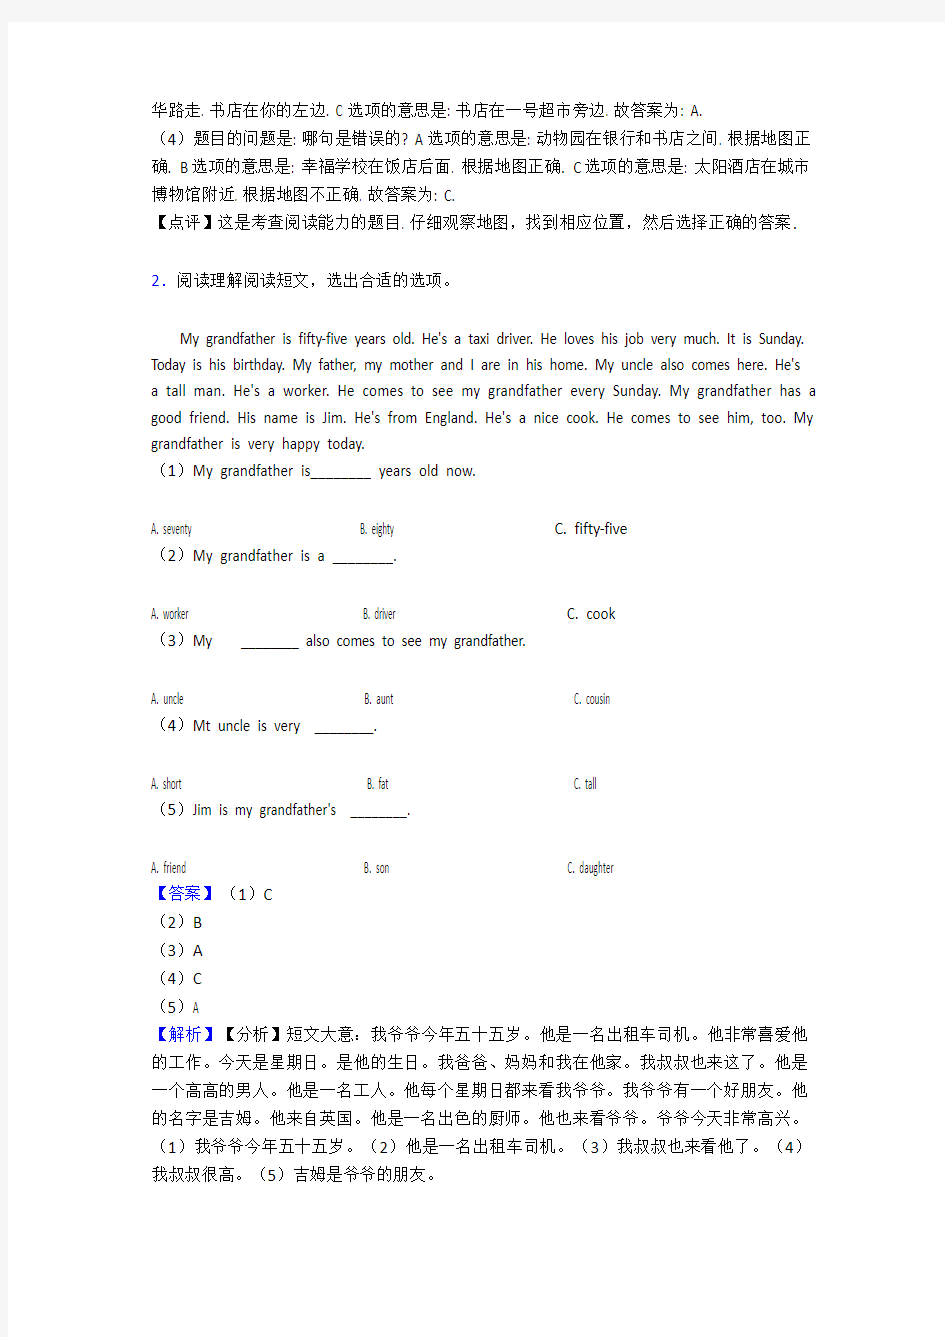 沪教版牛津上海小学五年级上册英语阅读理解练习题大全及答案解析